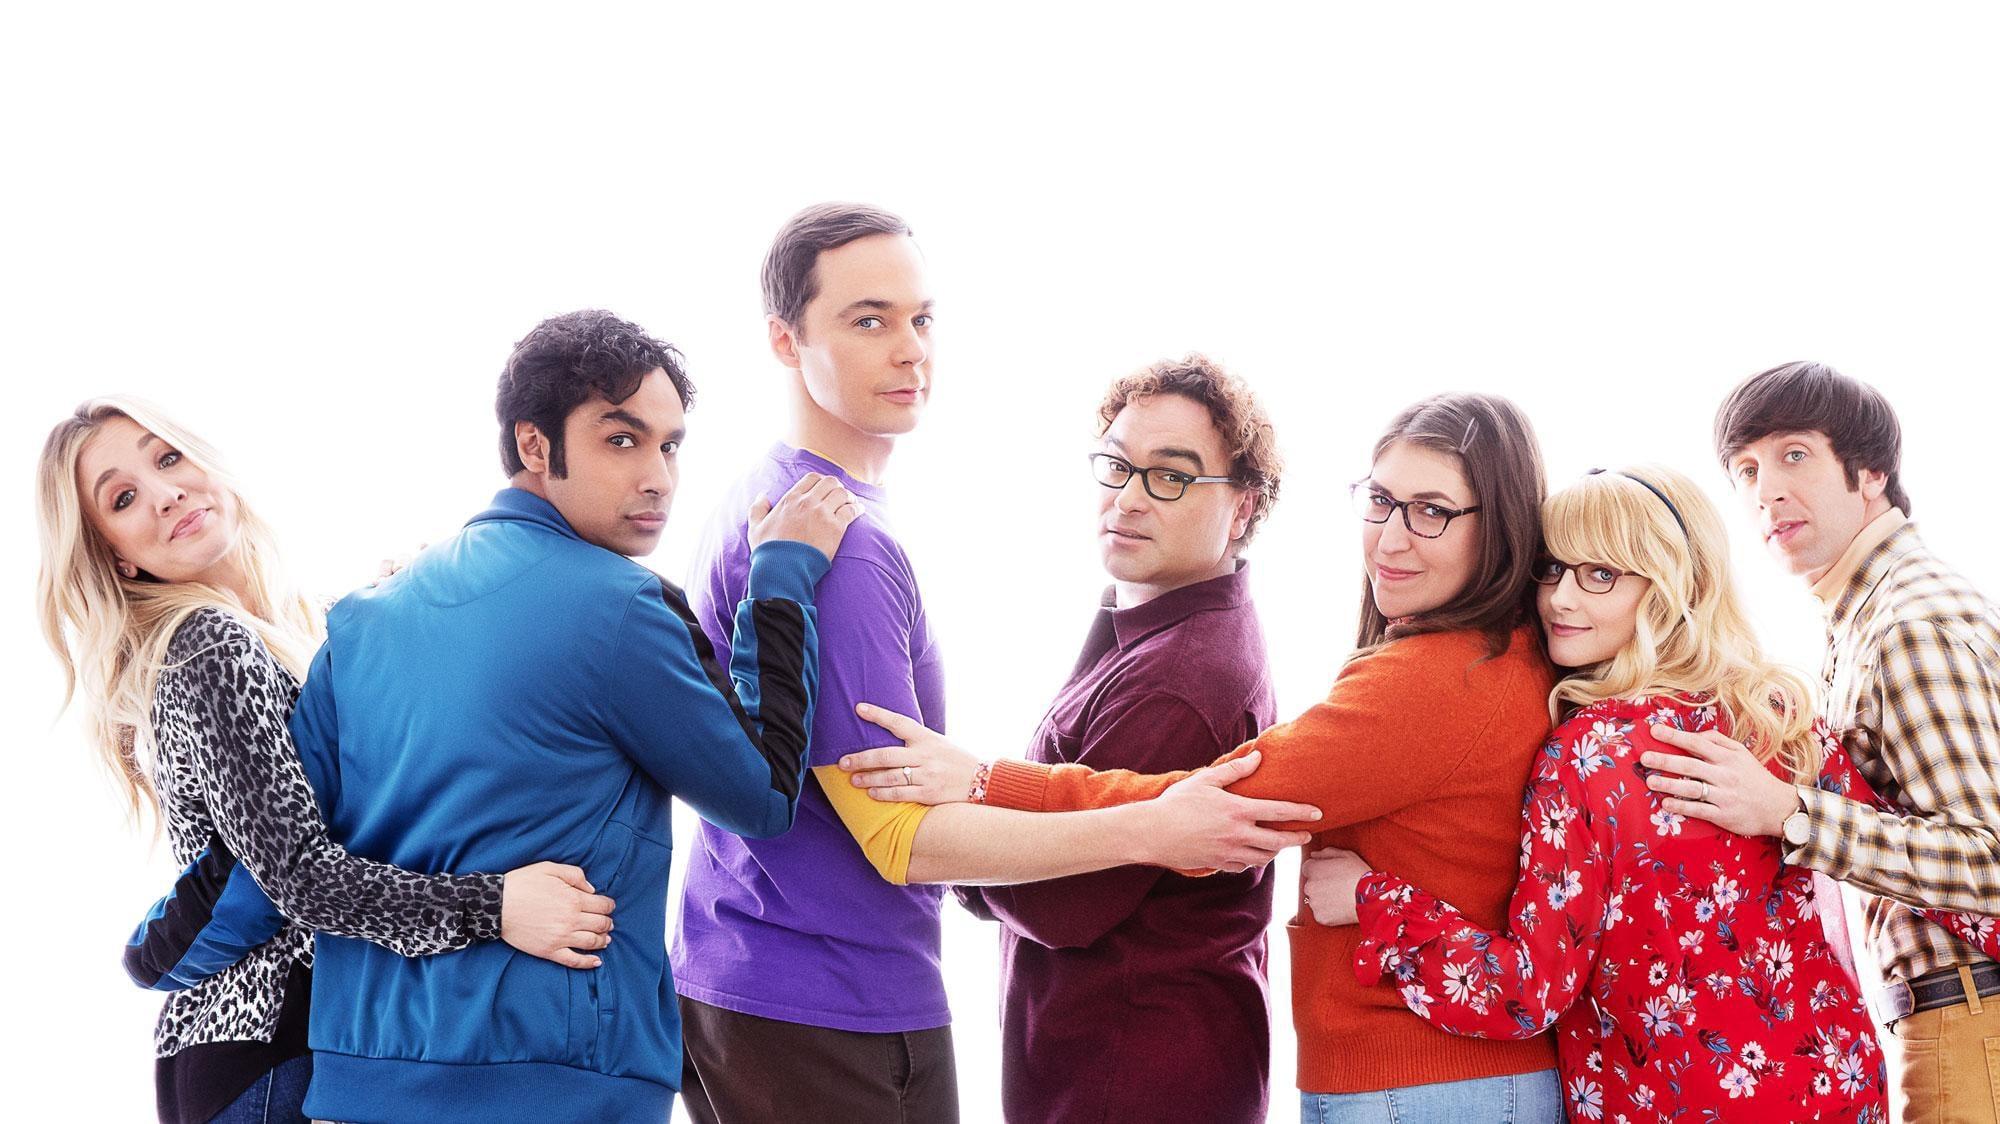 The Big Bang Theory backdrop